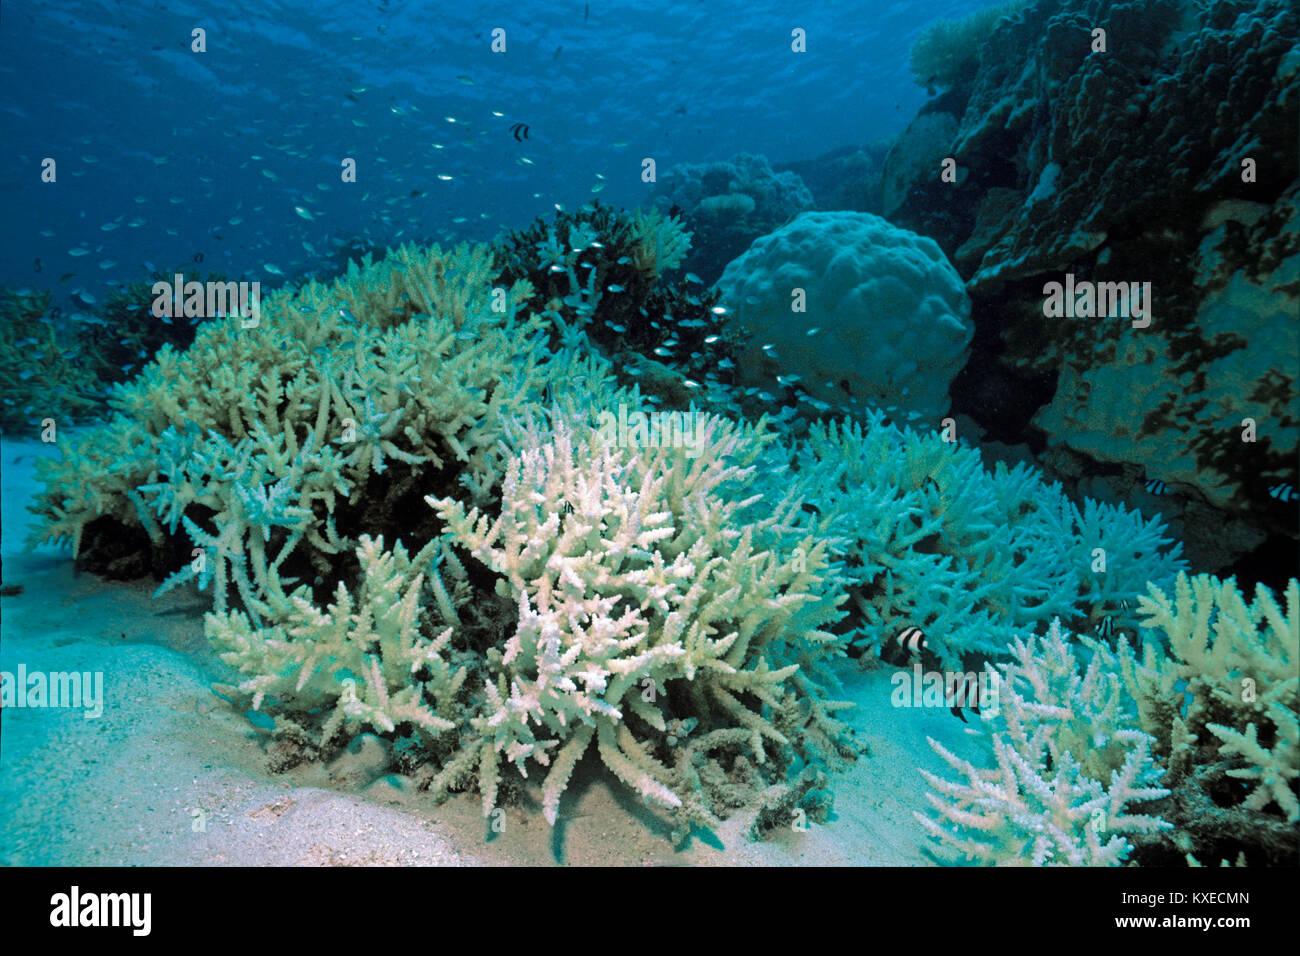 Los corales Staghorn blanqueada, la decoloración de los arrecifes de coral, las consecuencias del calentamiento global, el arrecife de coral en las islas Maldivas, océano Índico, Asia Foto de stock